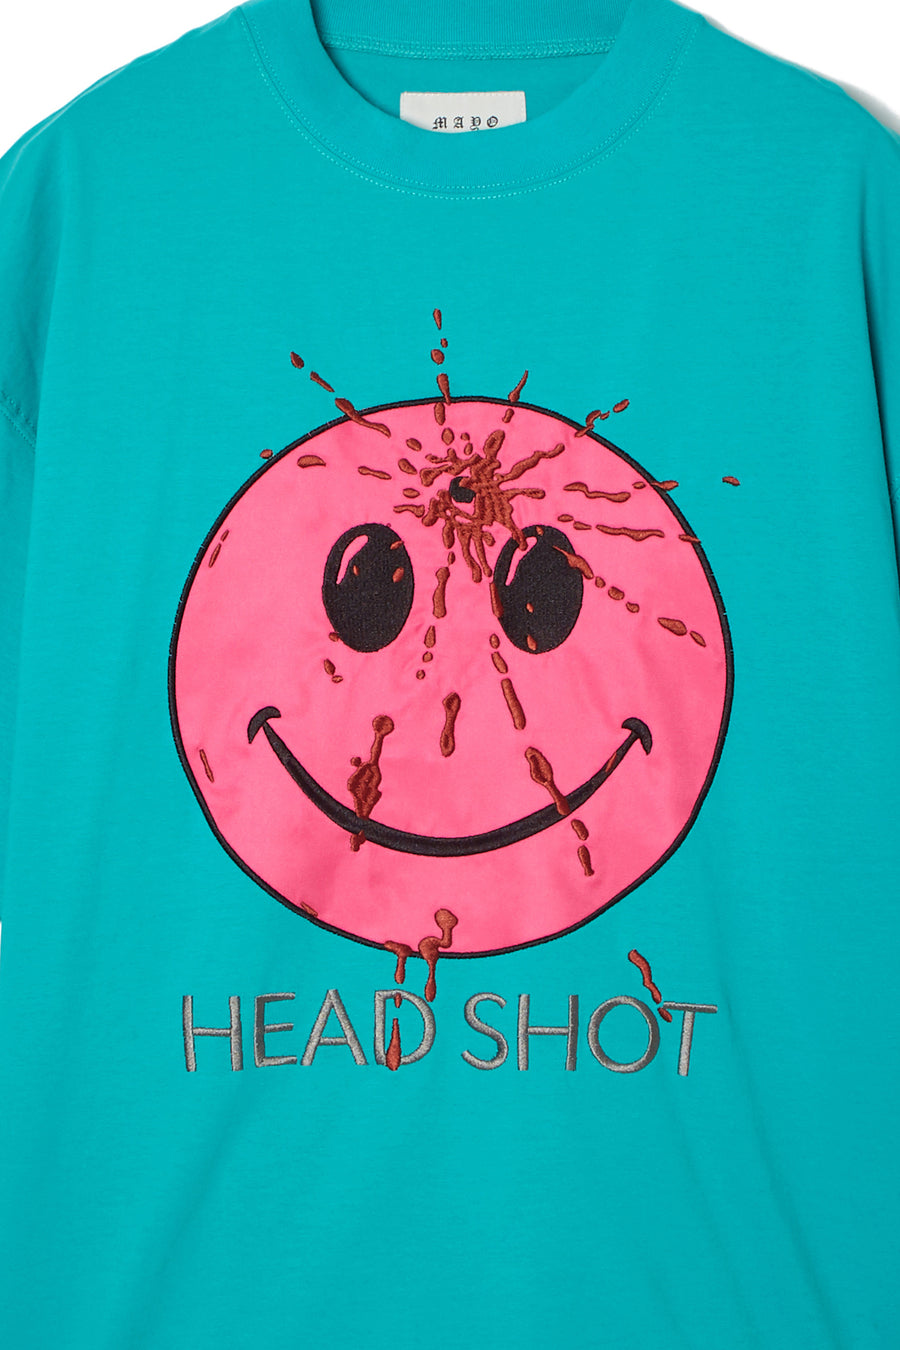 HEAD SHOT Embroidery short Sleeve Tee - KINMIYA BLUE